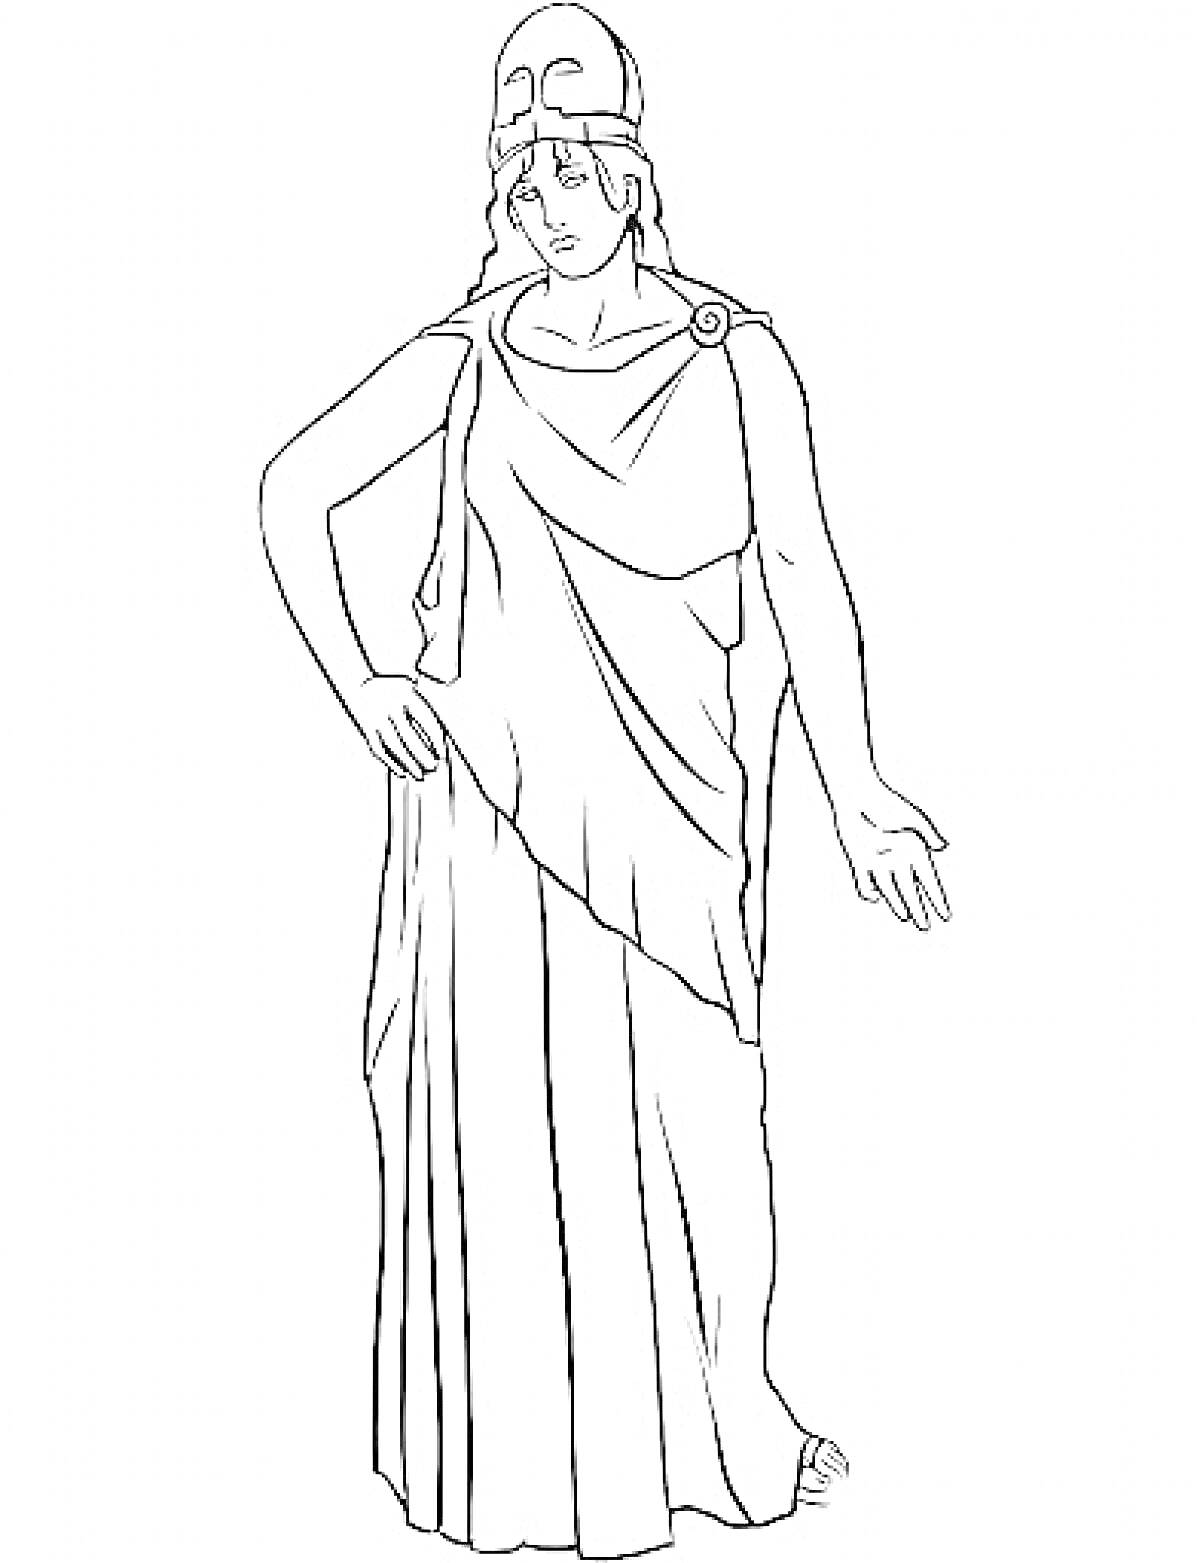 Богиня Древней Греции в шлеме и хламиде